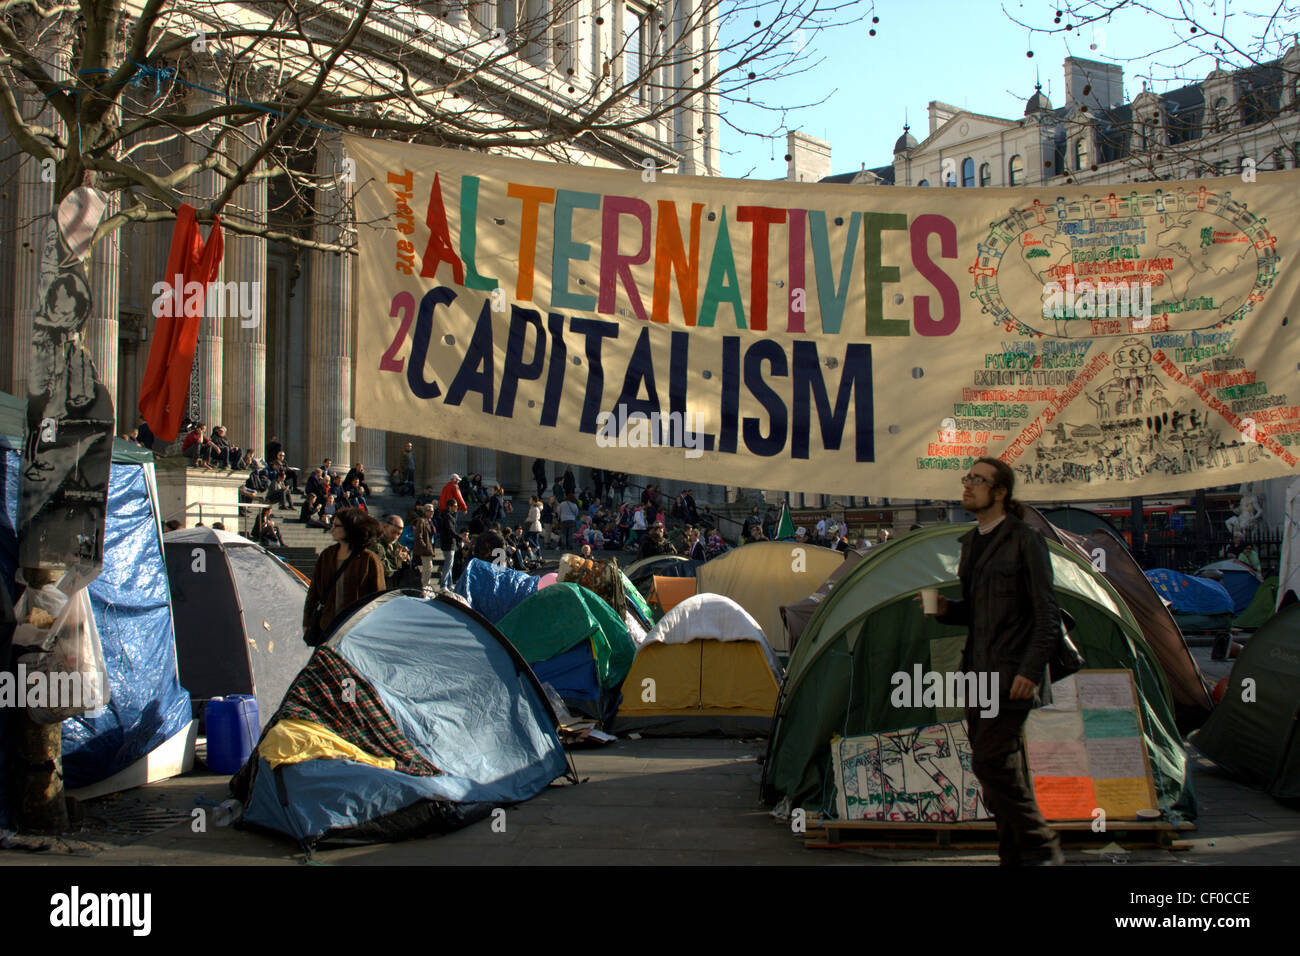 Les manifestants ont campé à l'extérieur de la Cathédrale St Paul, London - fait partie de la campagne d'Occupy London contre la cupidité des entreprises Banque D'Images